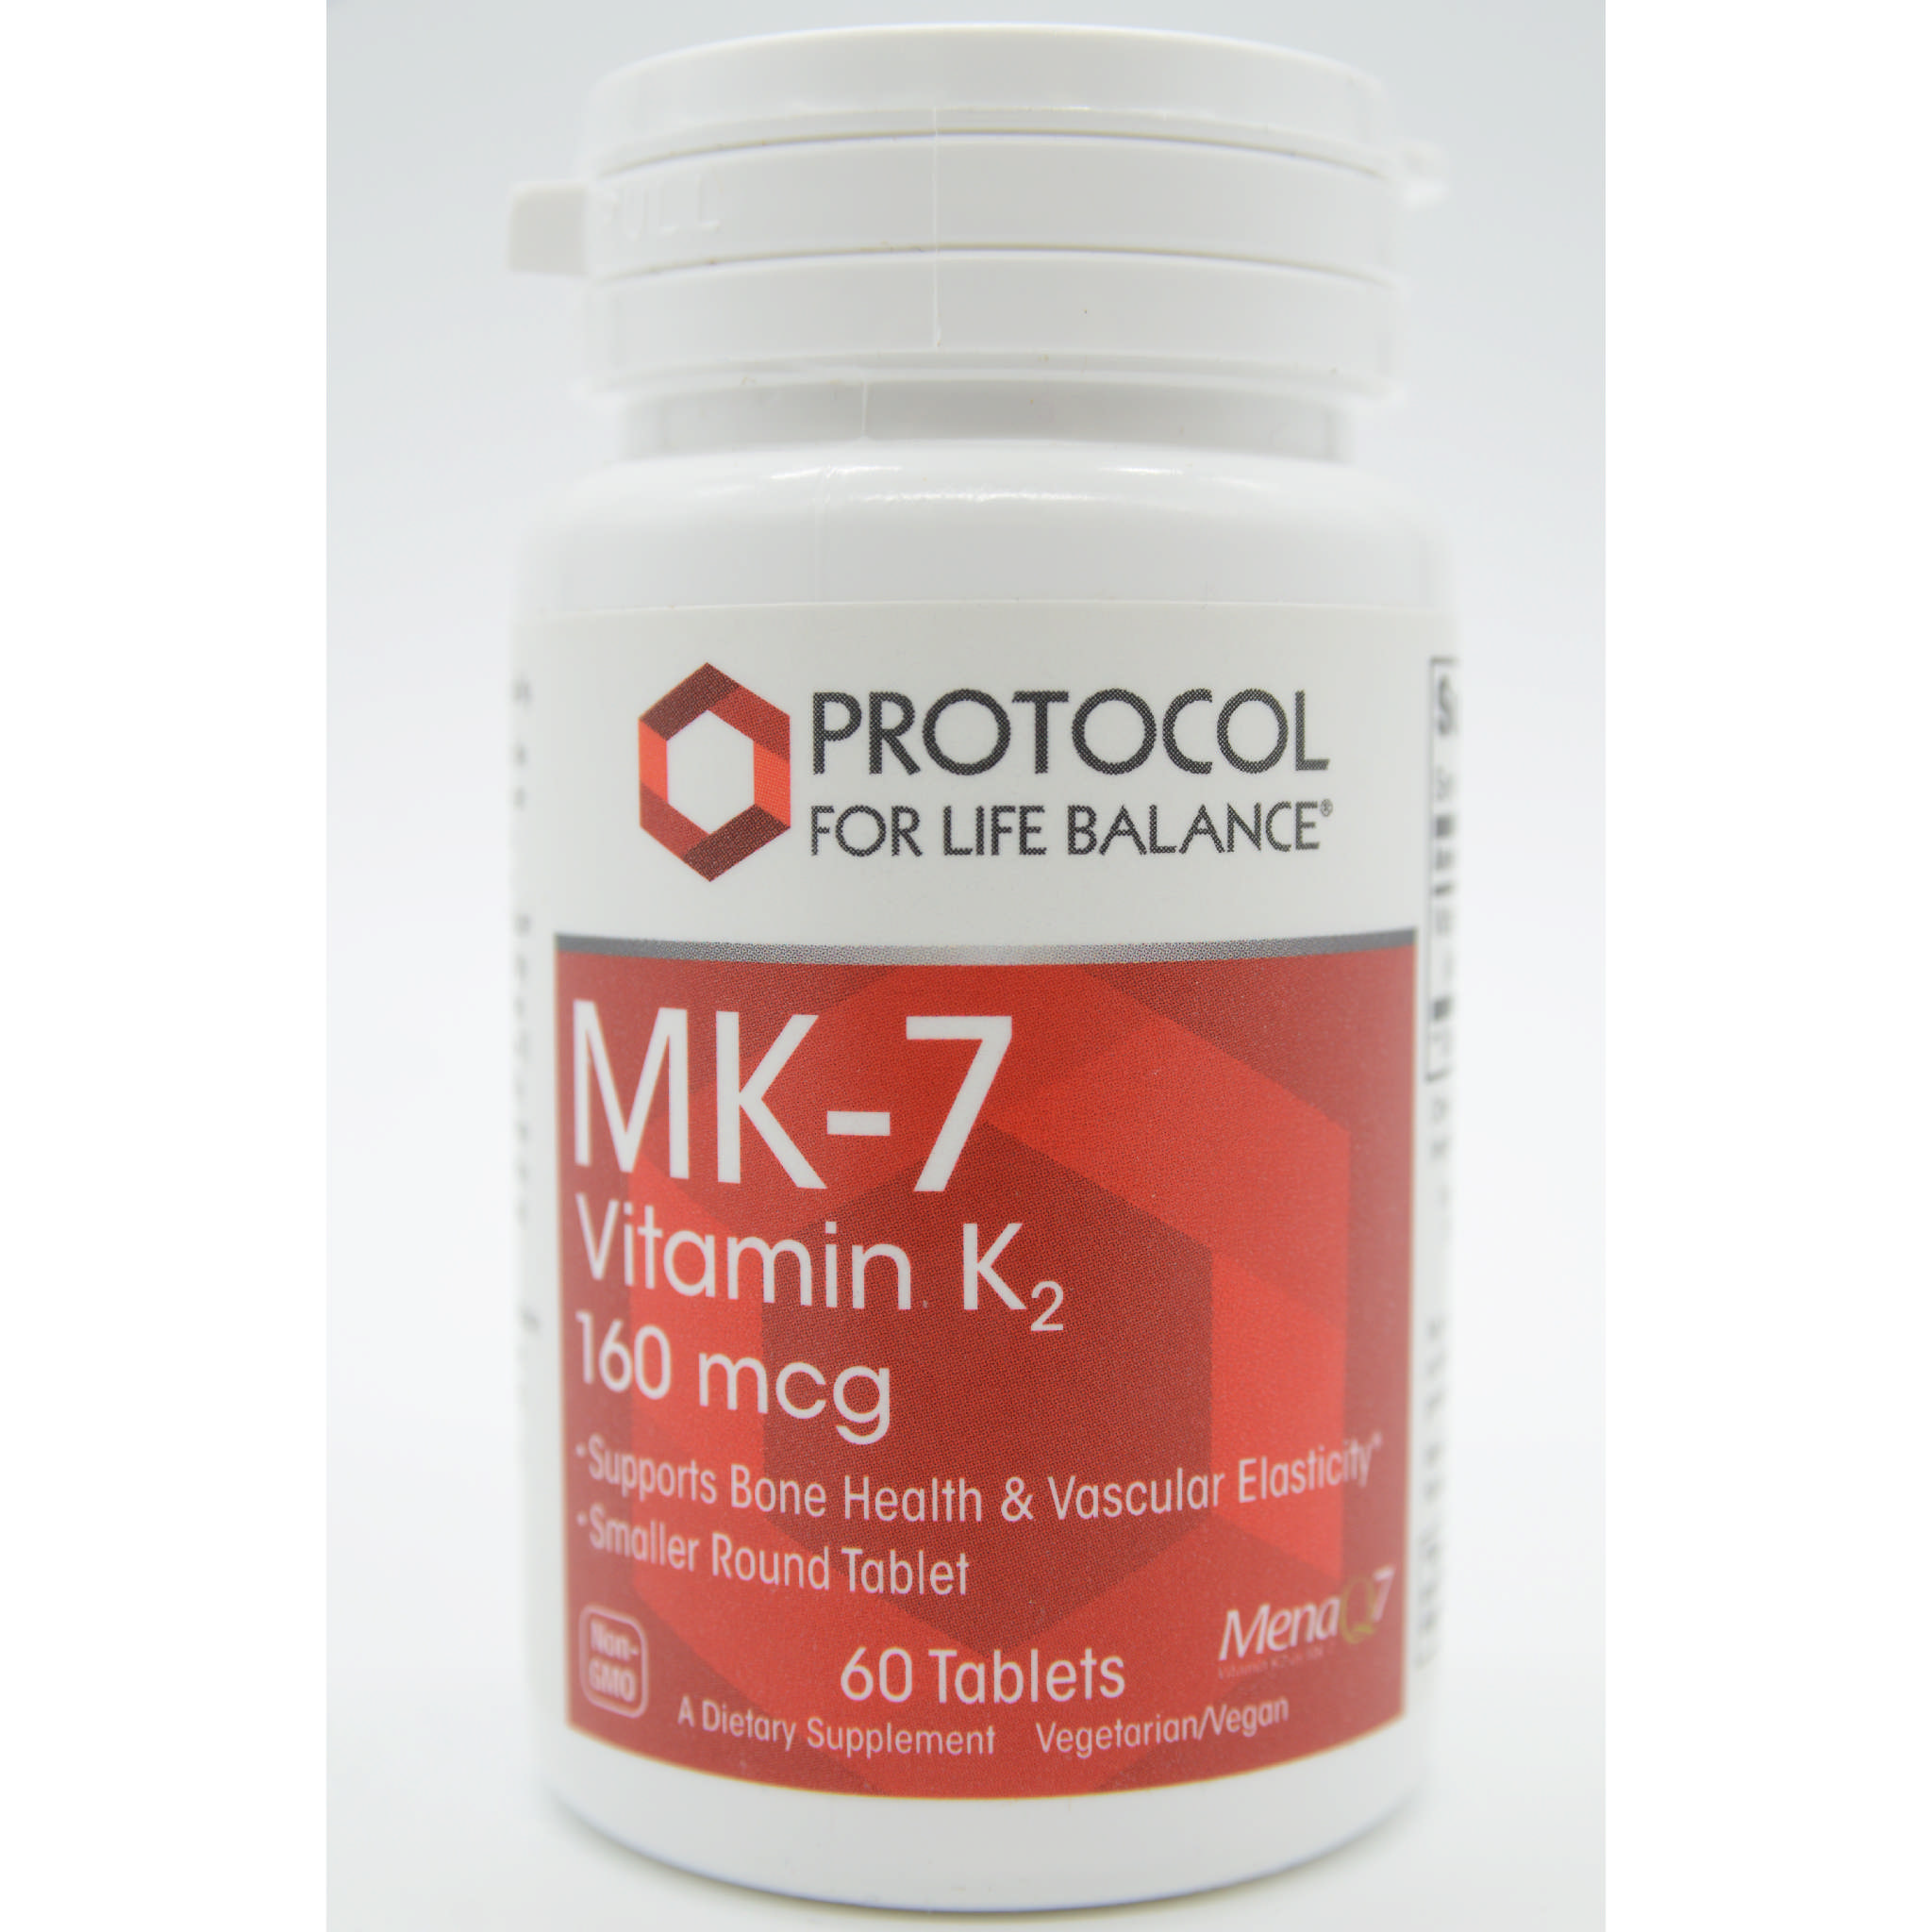 Protocol For Life Balance - Mk 7 K2 160 mcg tab